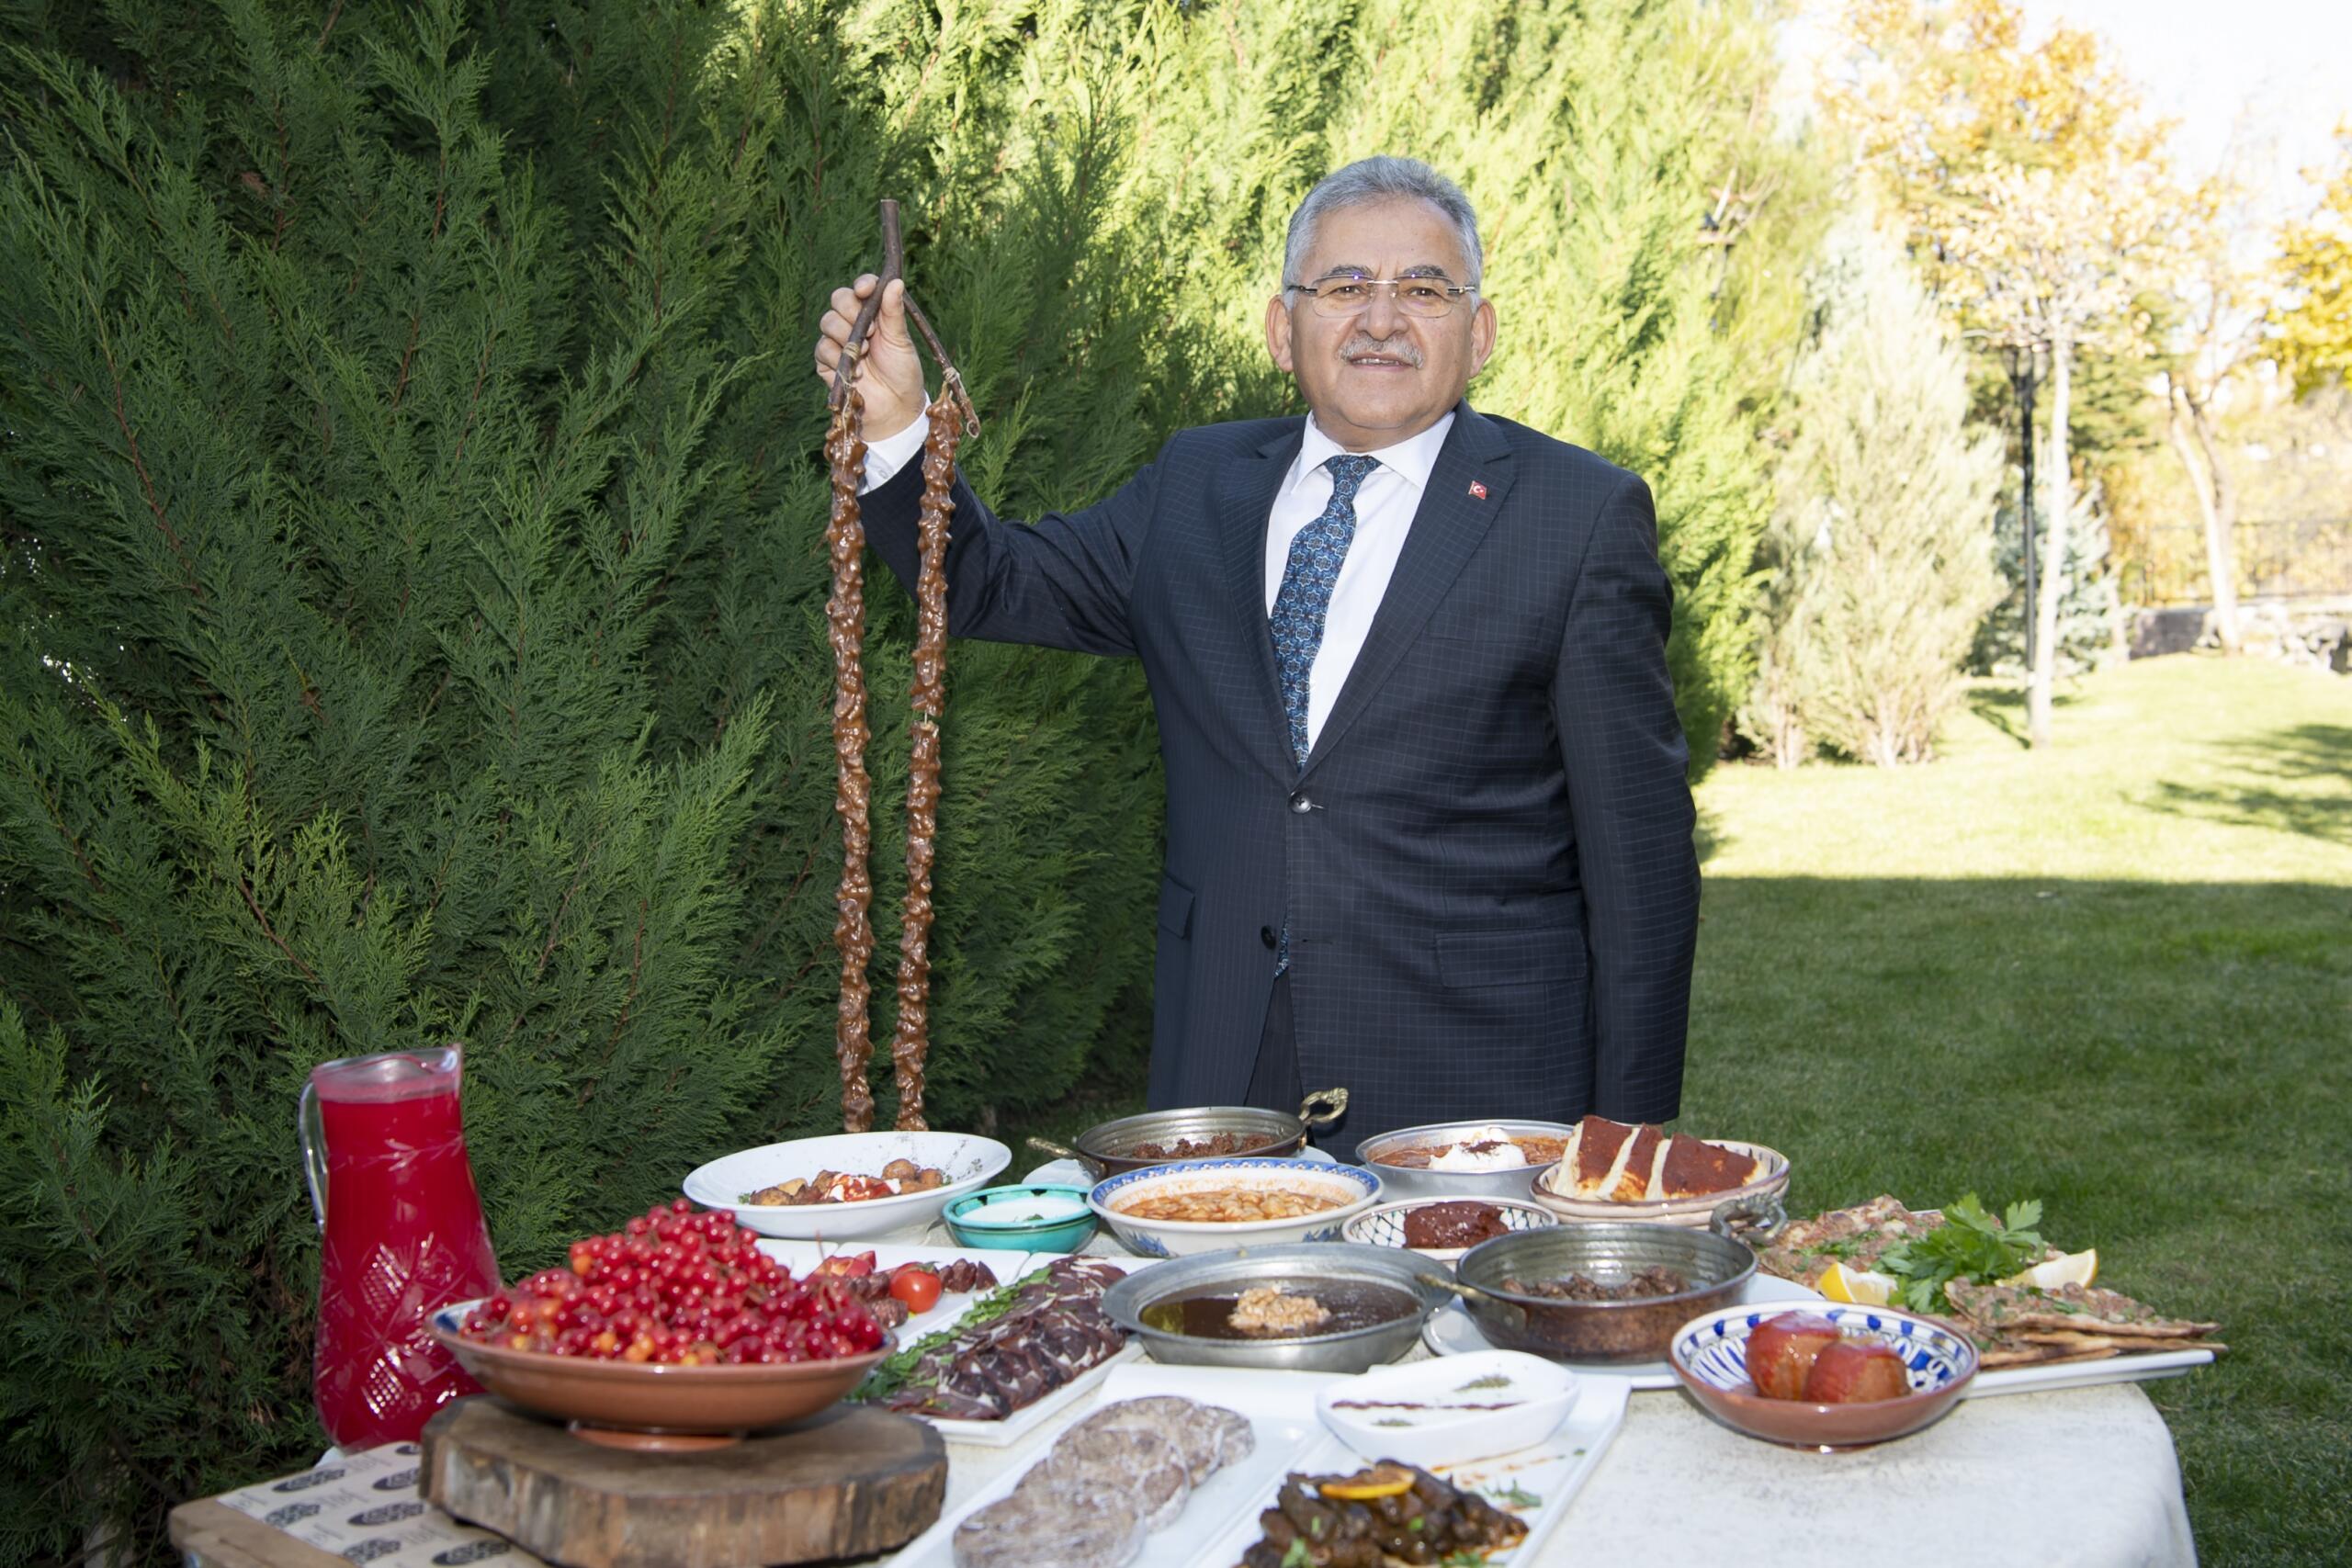 üyükşehir’in gastronomi çalışmaları Türk Kamu Yönetim Dergisi’ne konu oldu